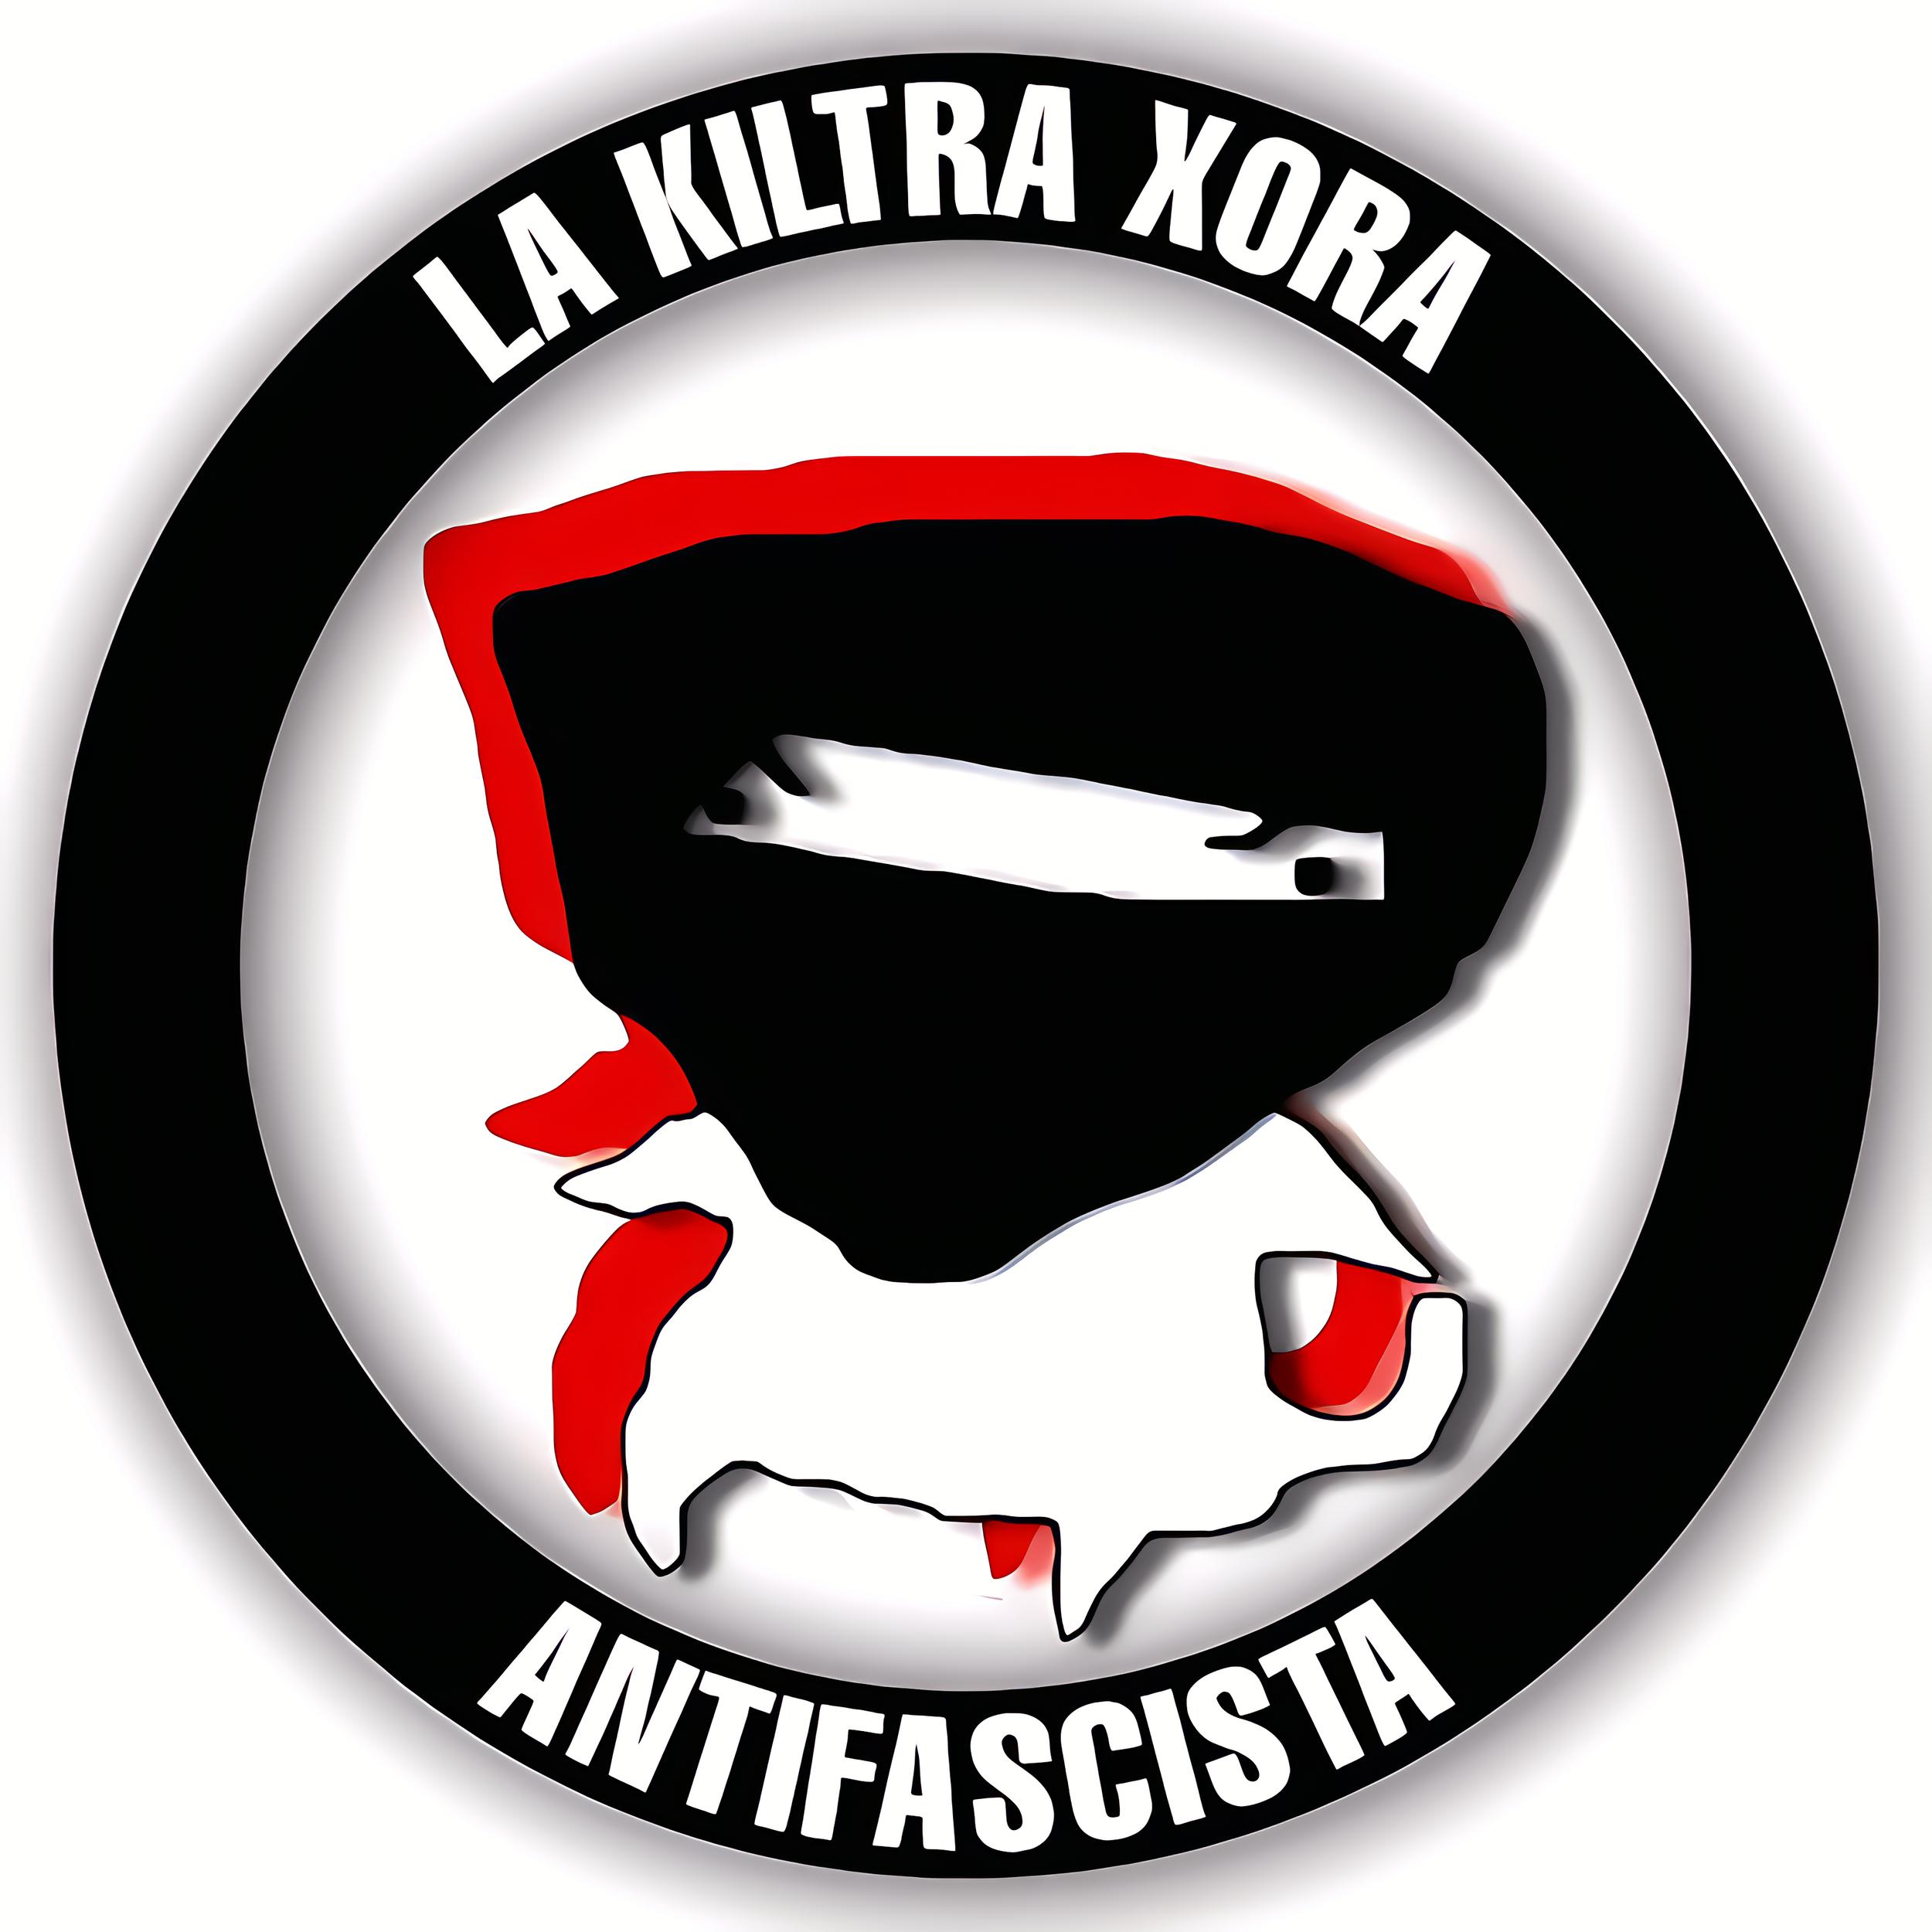 La kiltra xora antifascista